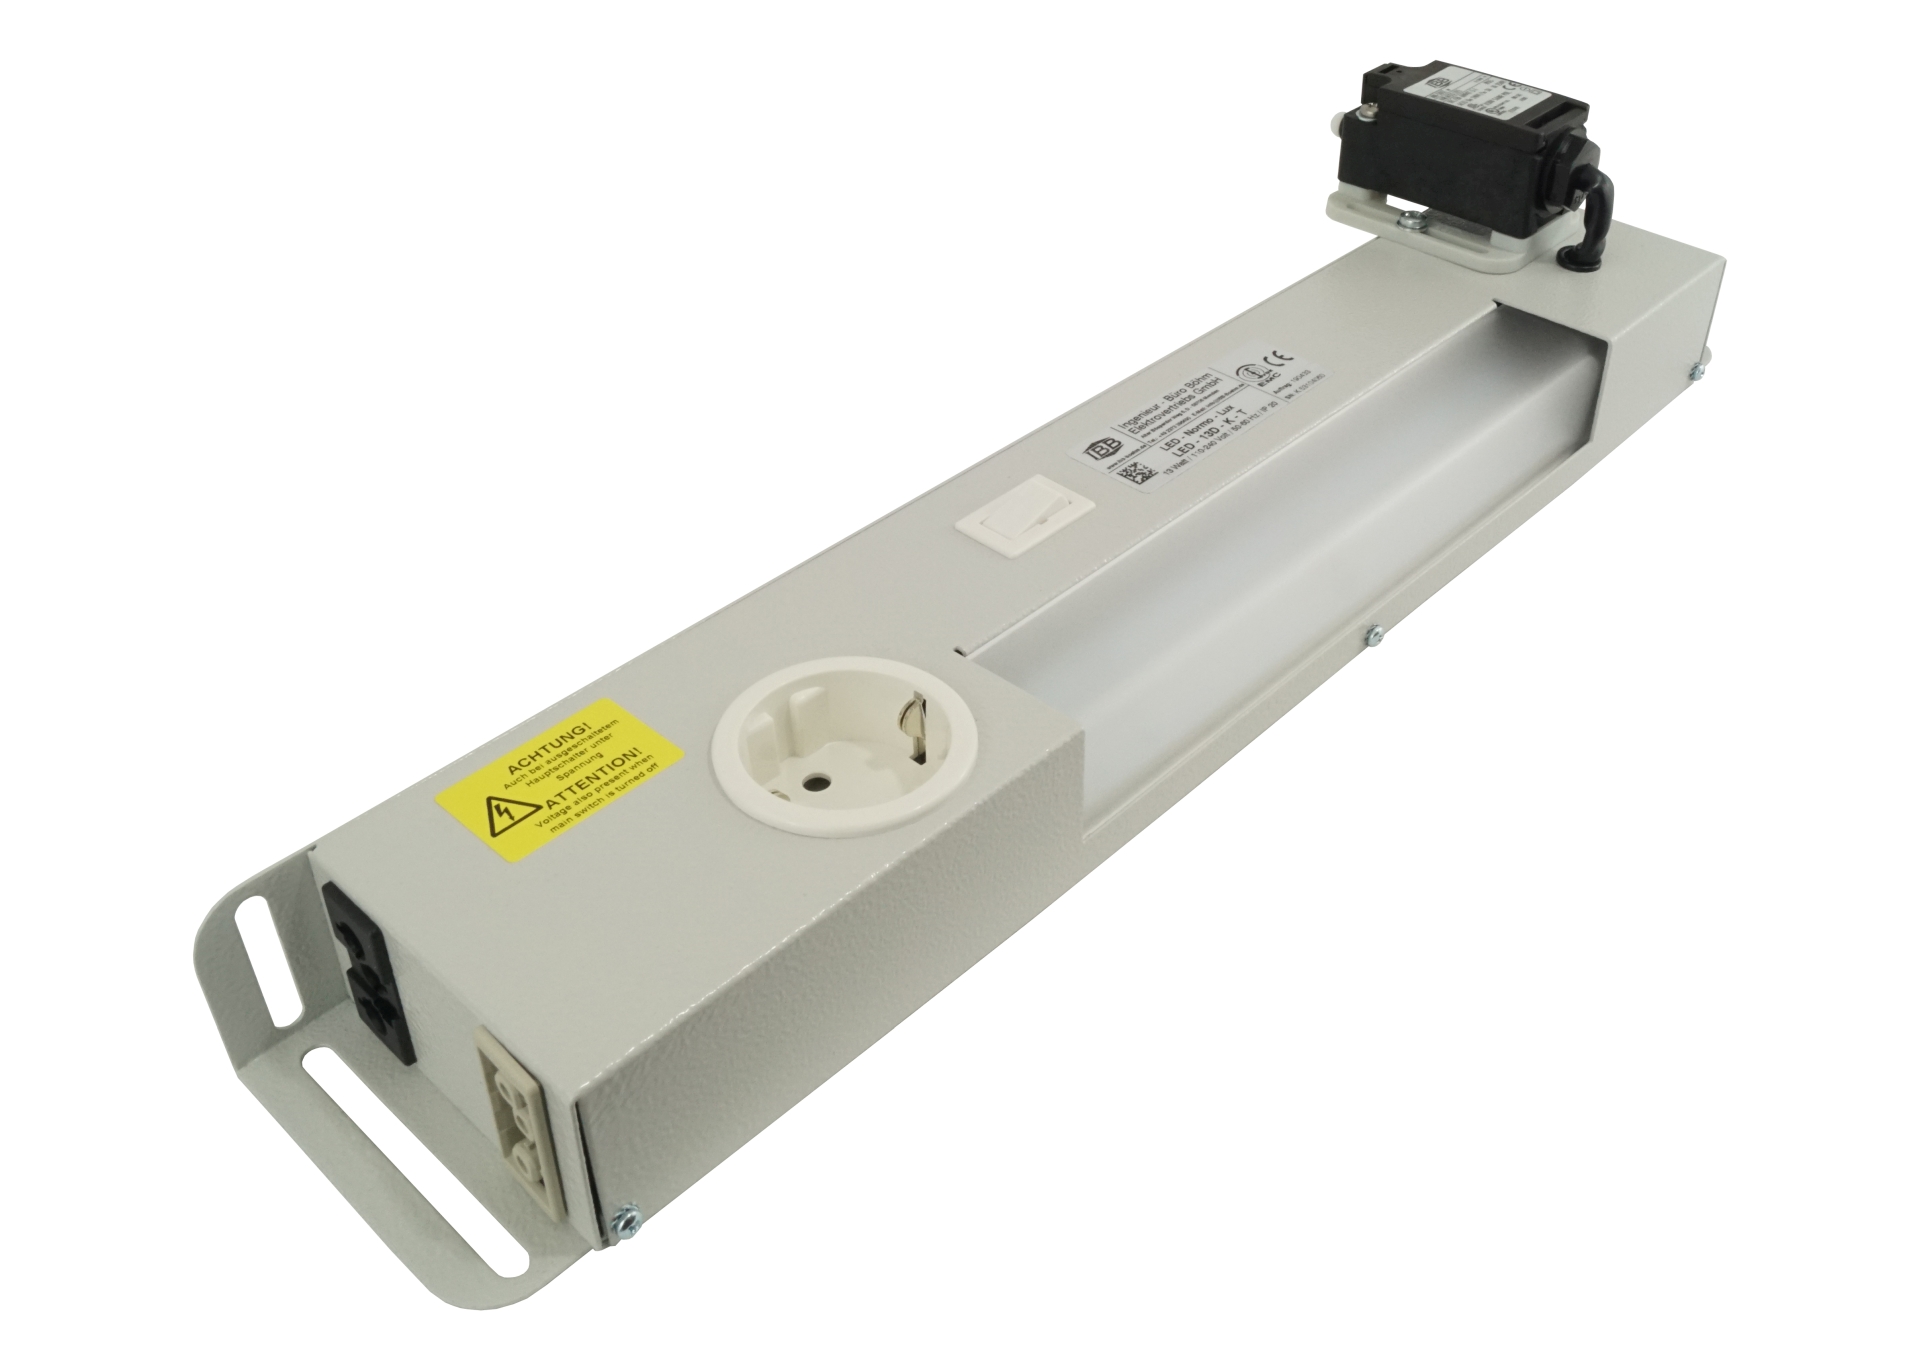 Abbildung LED Schaltschrankleuchte LED-Normo-Lux 13 Watt | Betriebsspannung: 110-240 Volt, 50-60 Hz